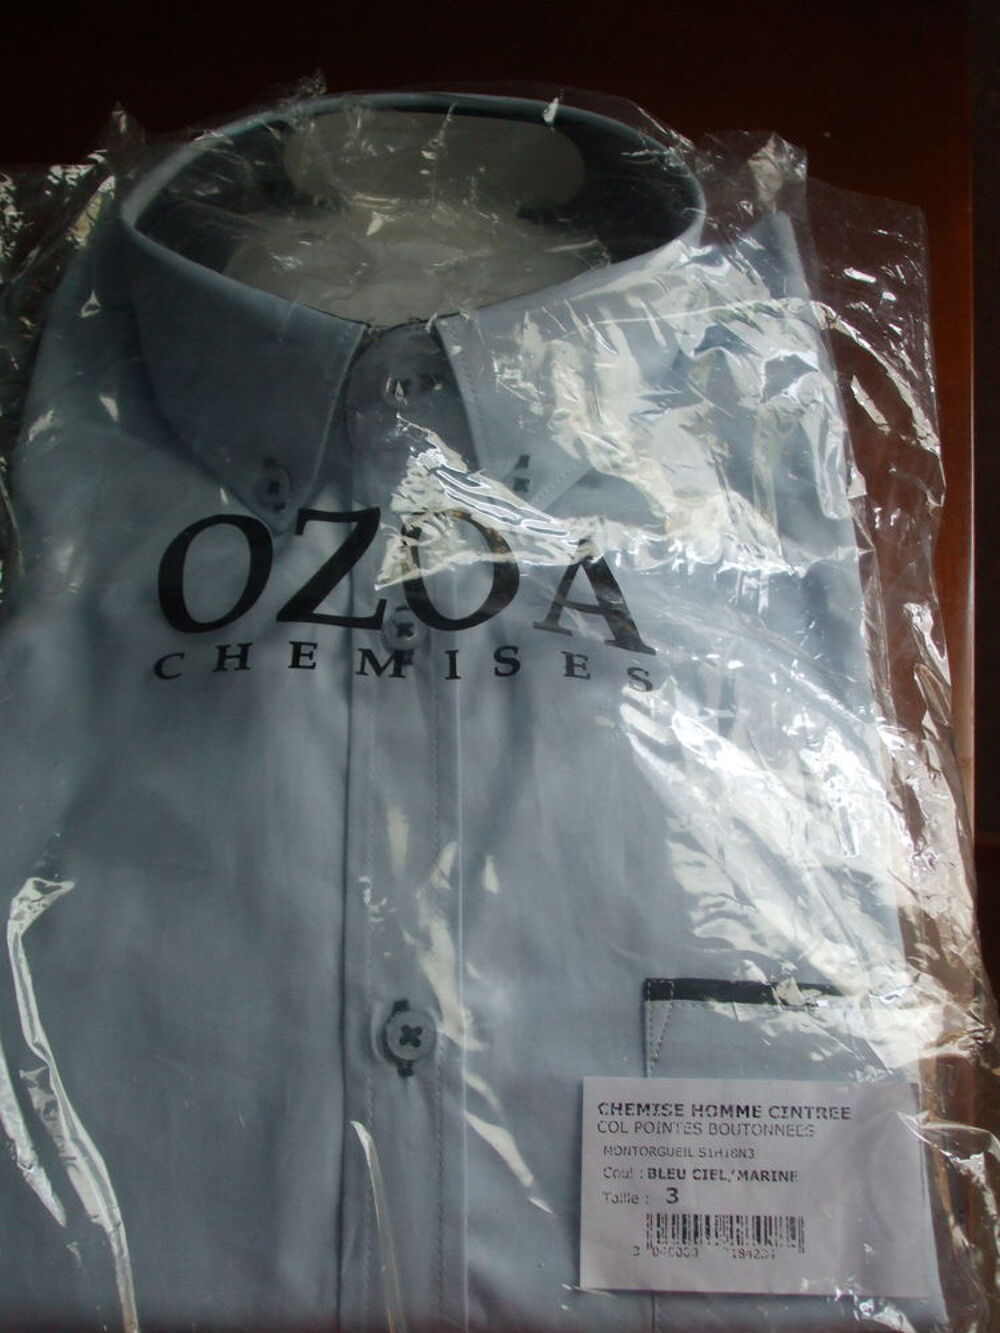  chemise OZOA neuve
Vtements